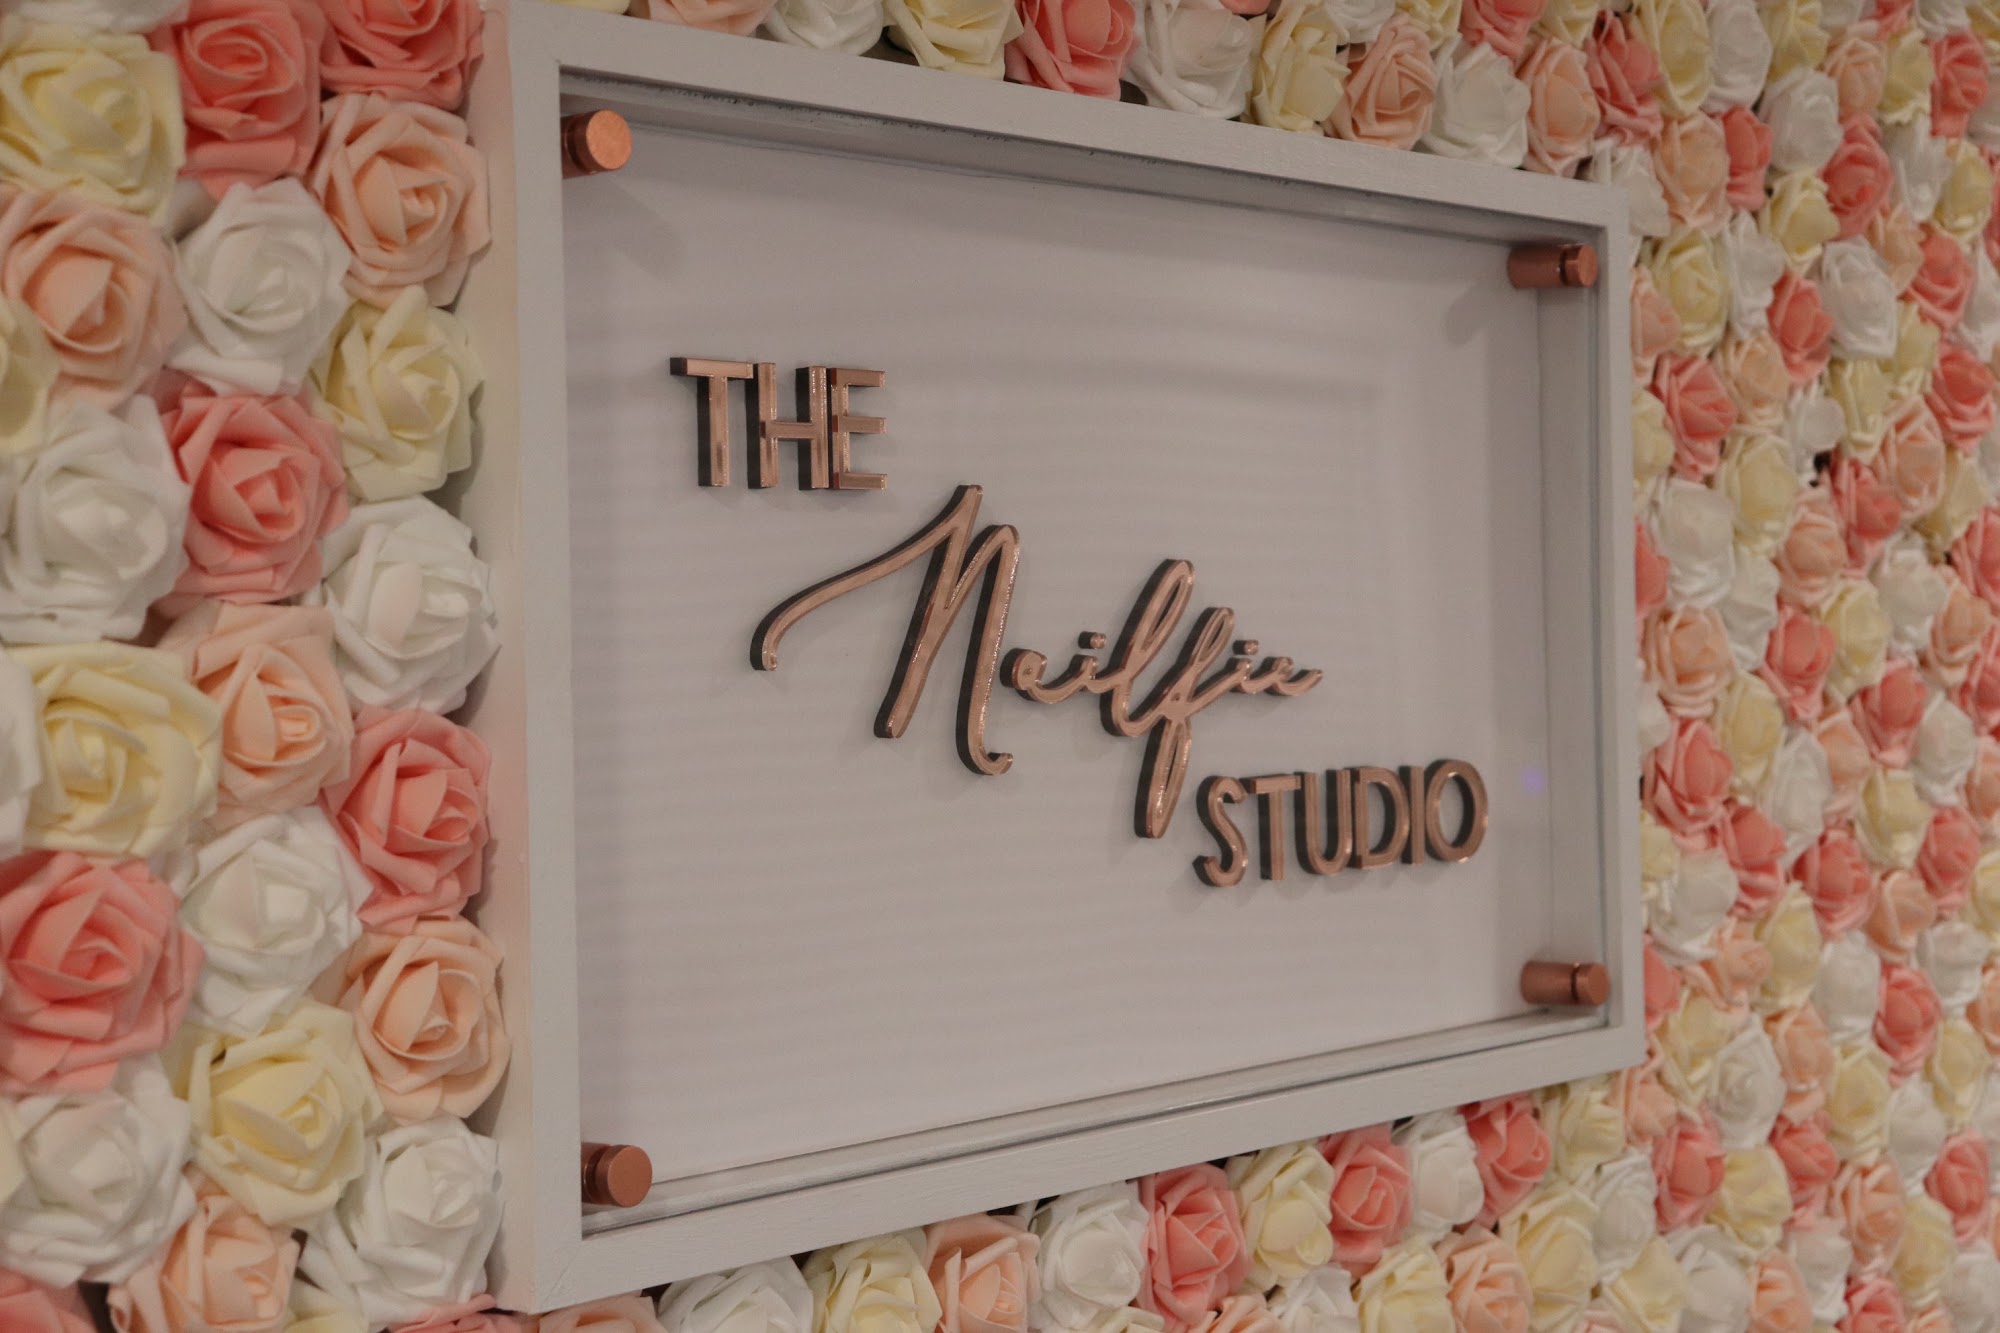 The Nailfie Studio